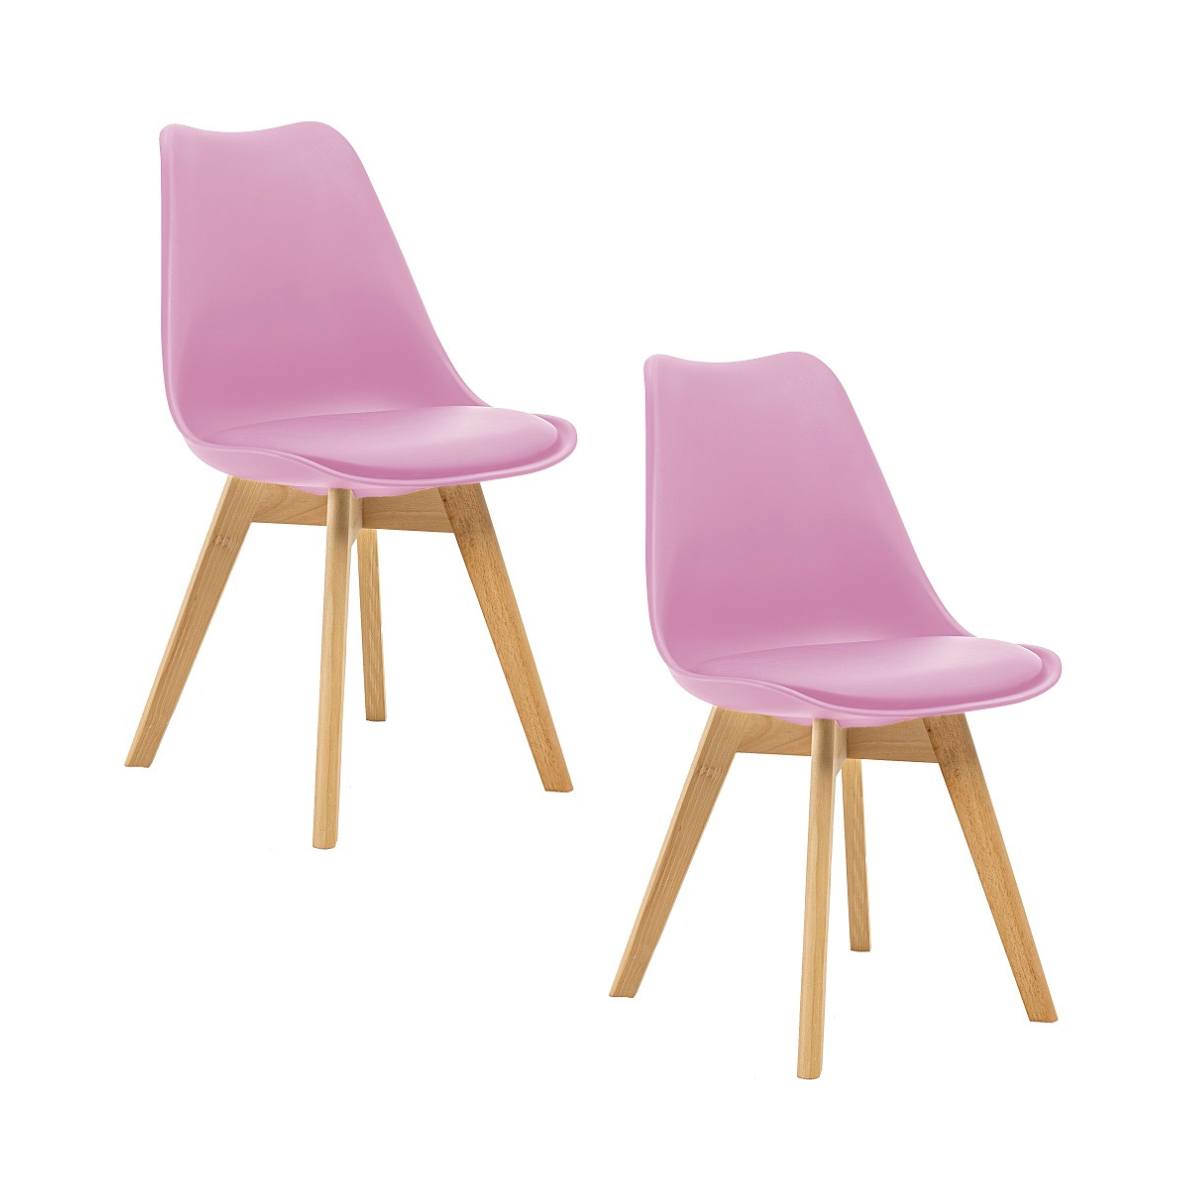 Kit 2 Cadeiras Saarinen Wood Com Estofamento Várias Cores - Rosa - 1